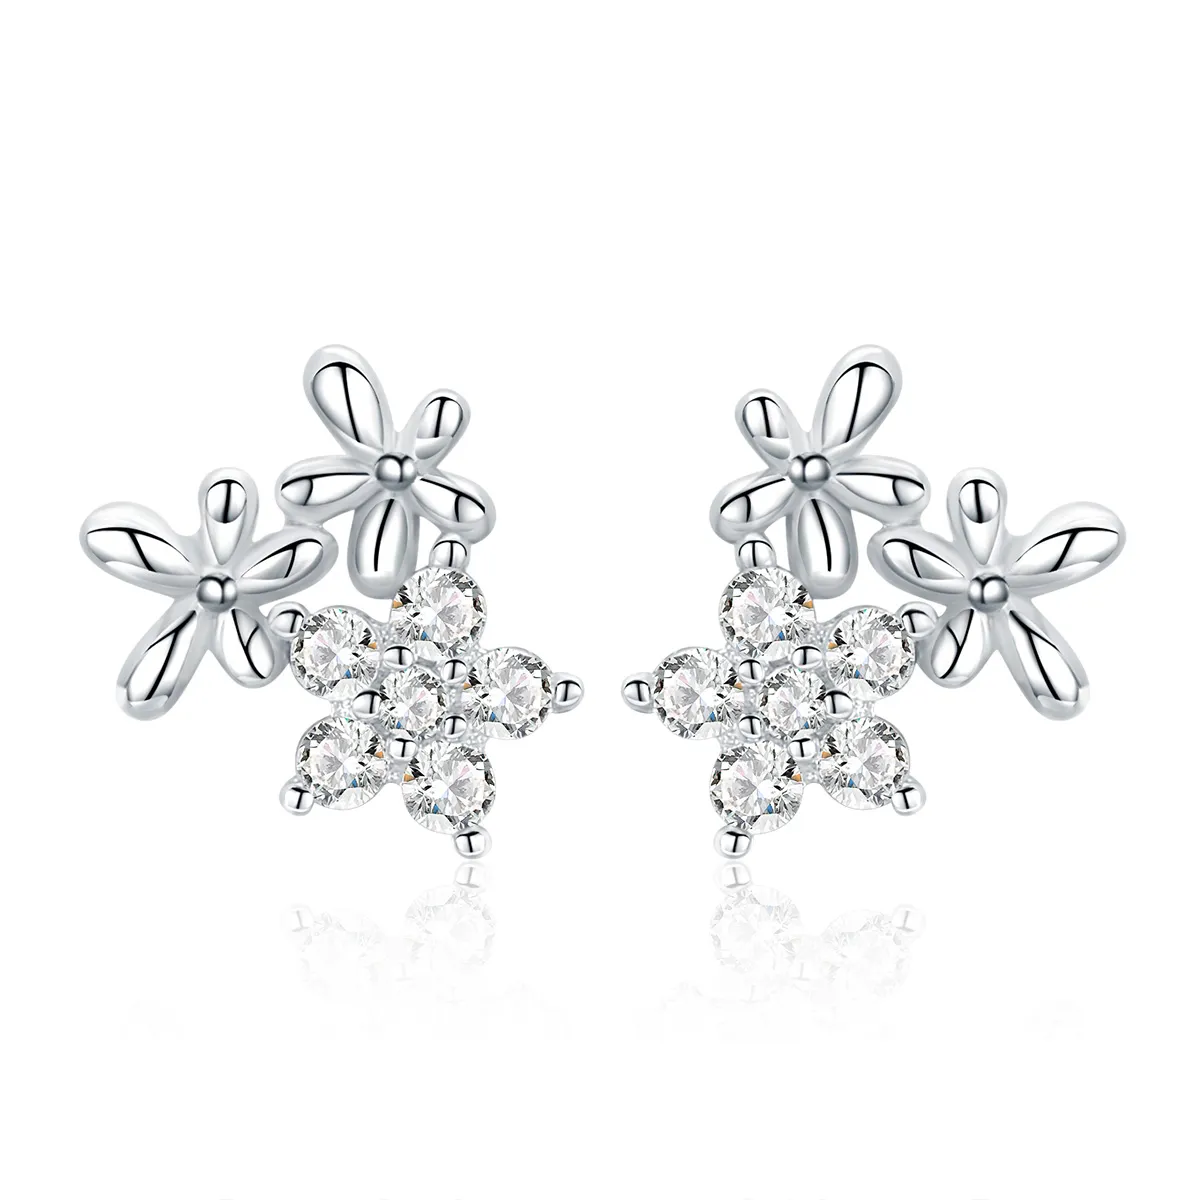 Pandora Style Silver Gypsophila Stud Earrings - BSE030